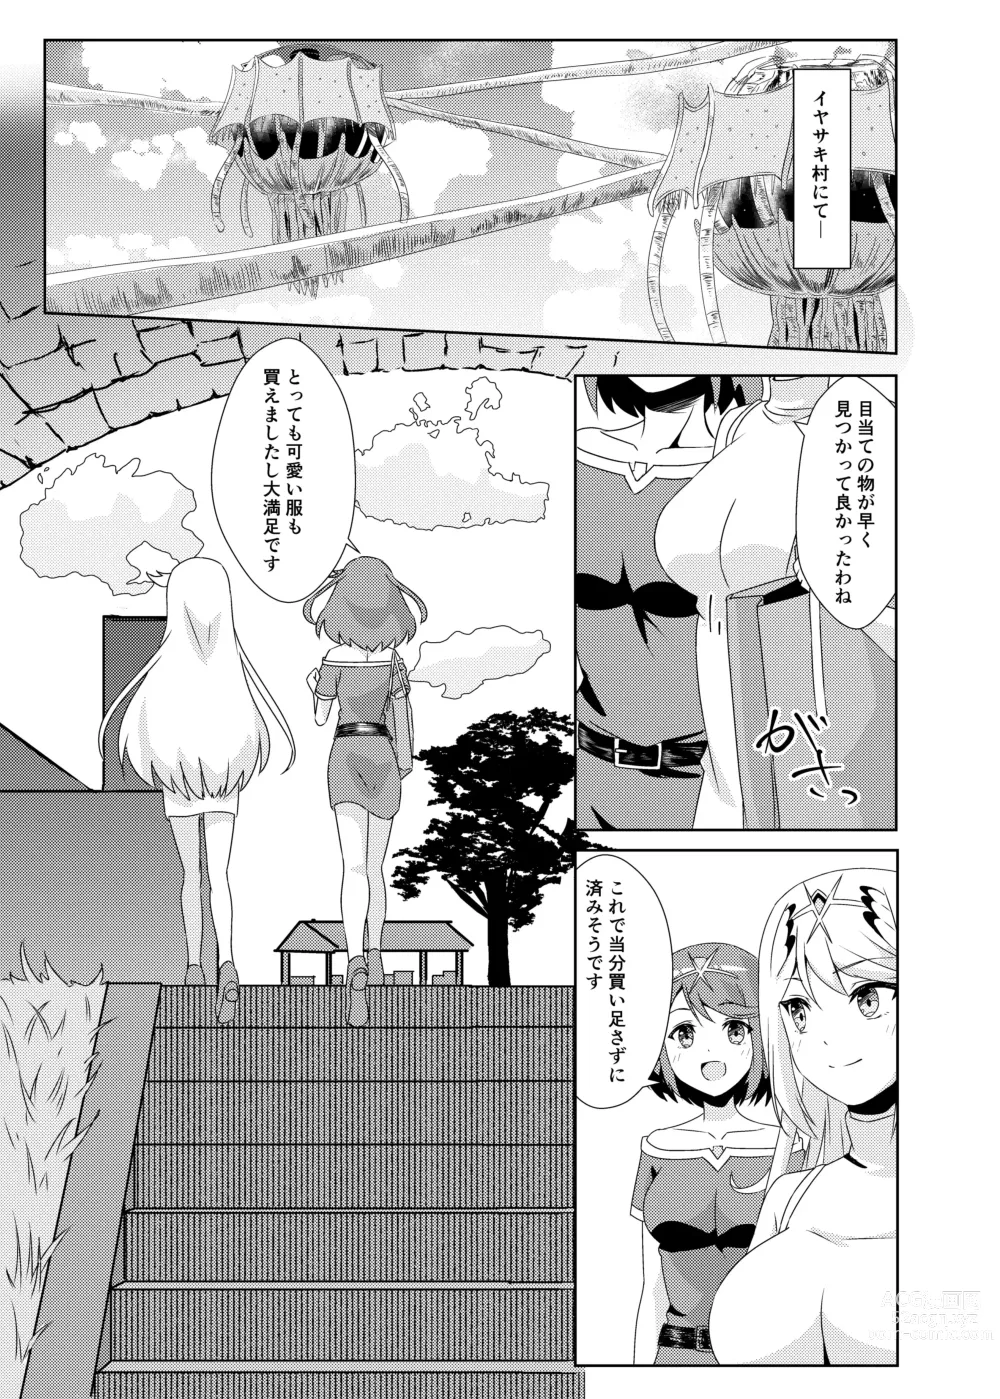 Page 3 of doujinshi Nyan Nyan Nia-chan 2